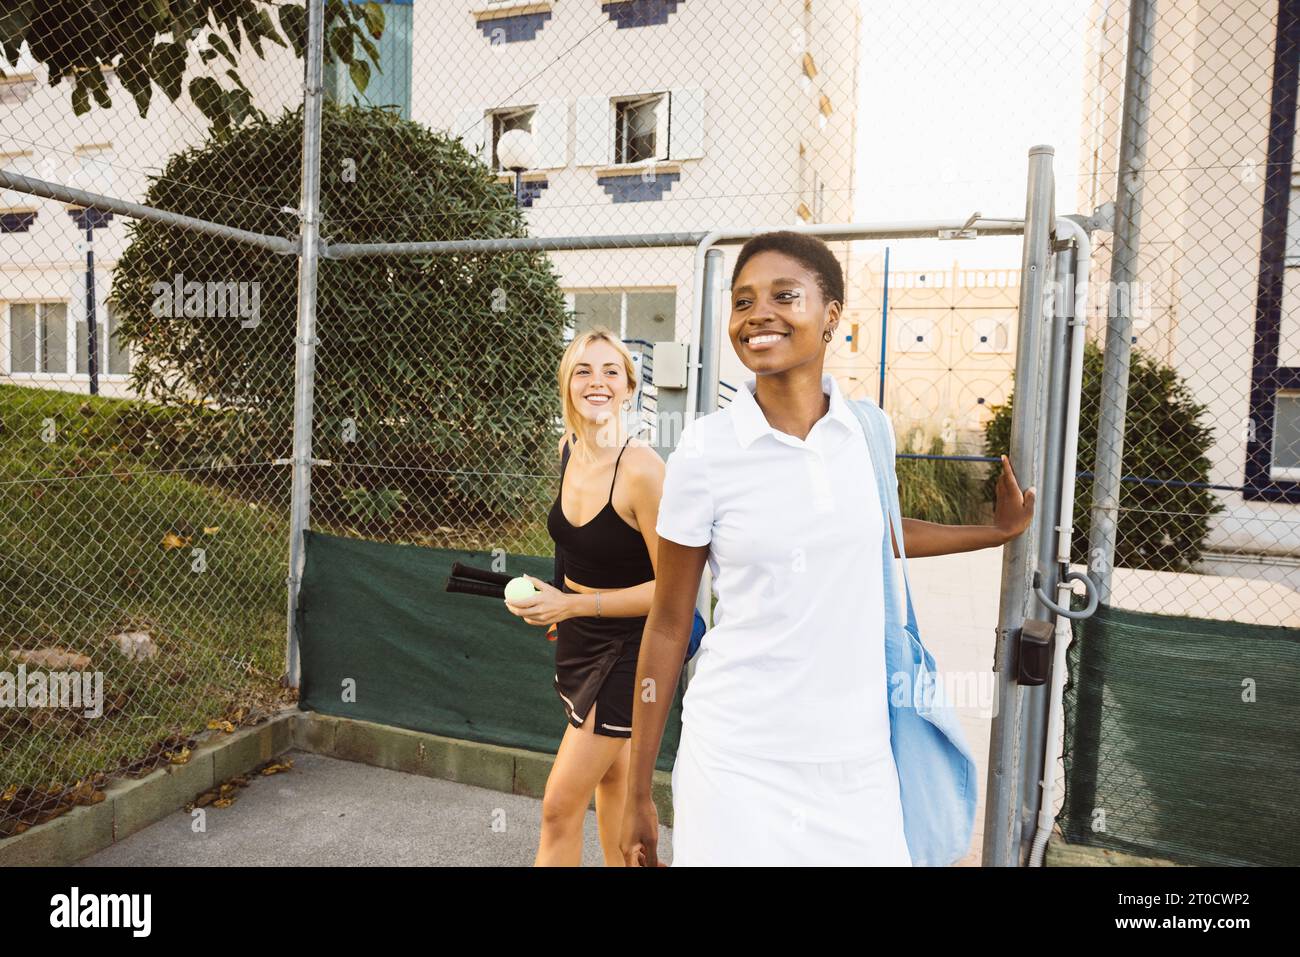 Deux jeunes amis entrant sur un court de tennis pour un match. Jeunes femmes gaies en vêtements de tennis arrivant à un court de tennis pour un jeu amateur. Banque D'Images